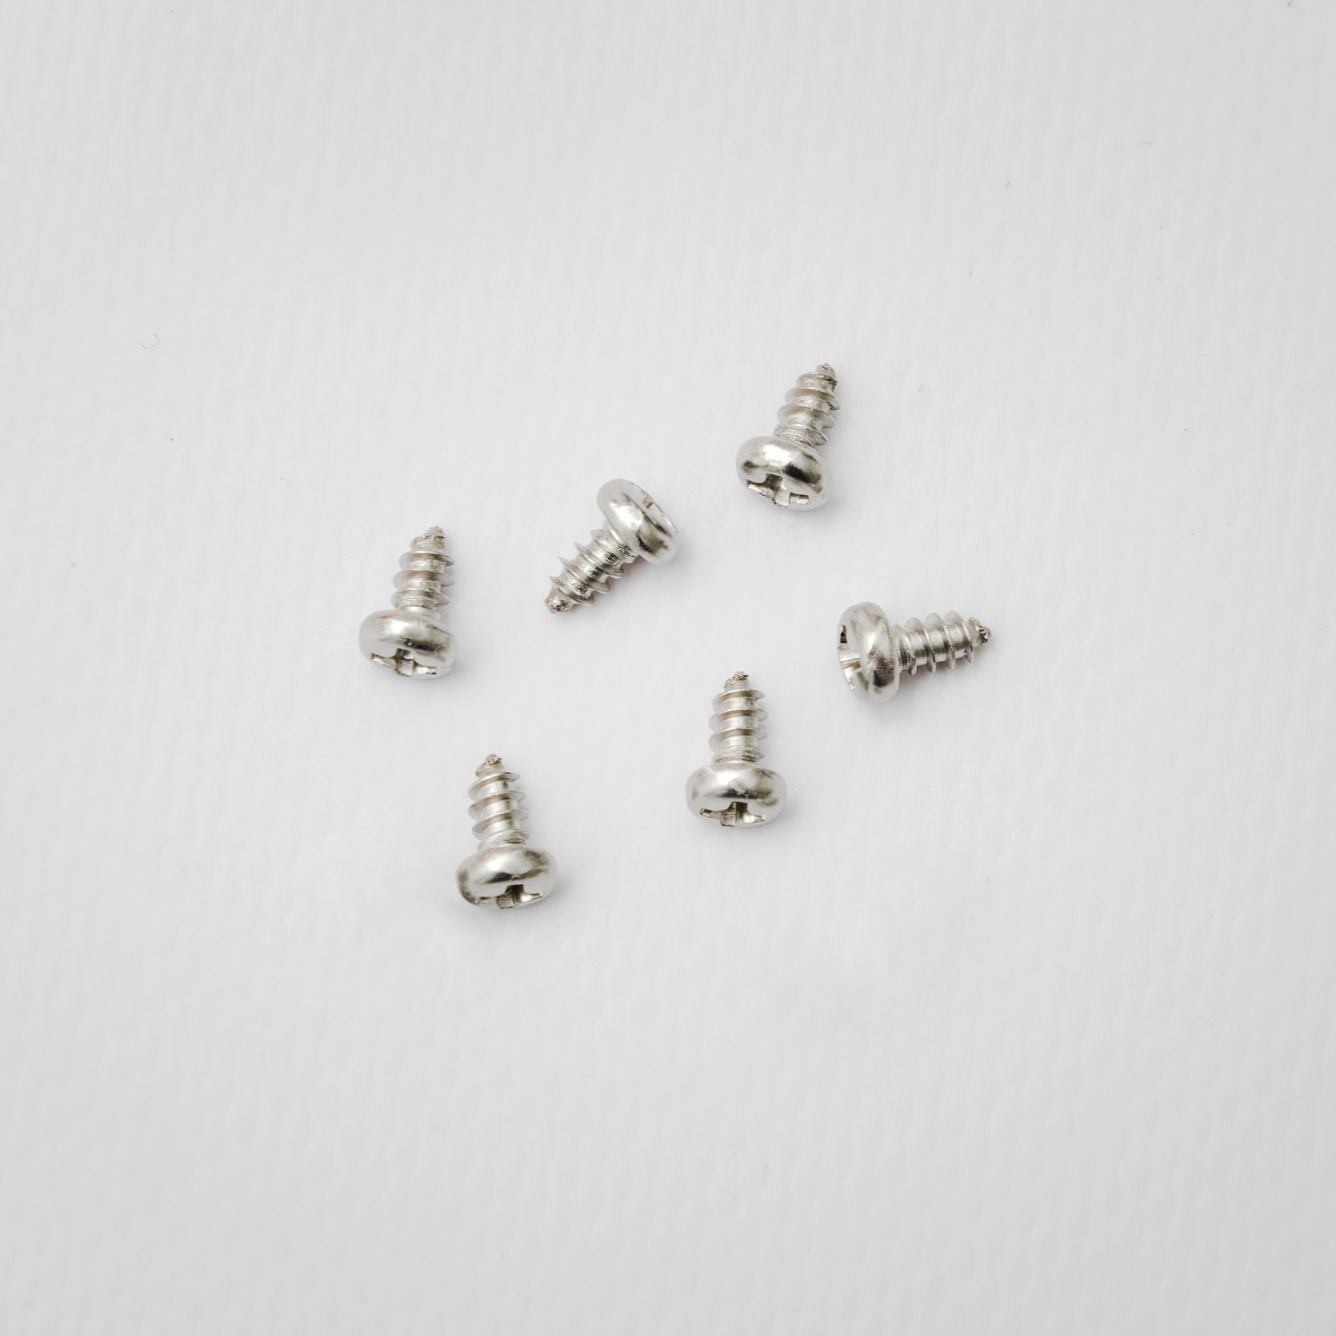 Pack of 6 screws